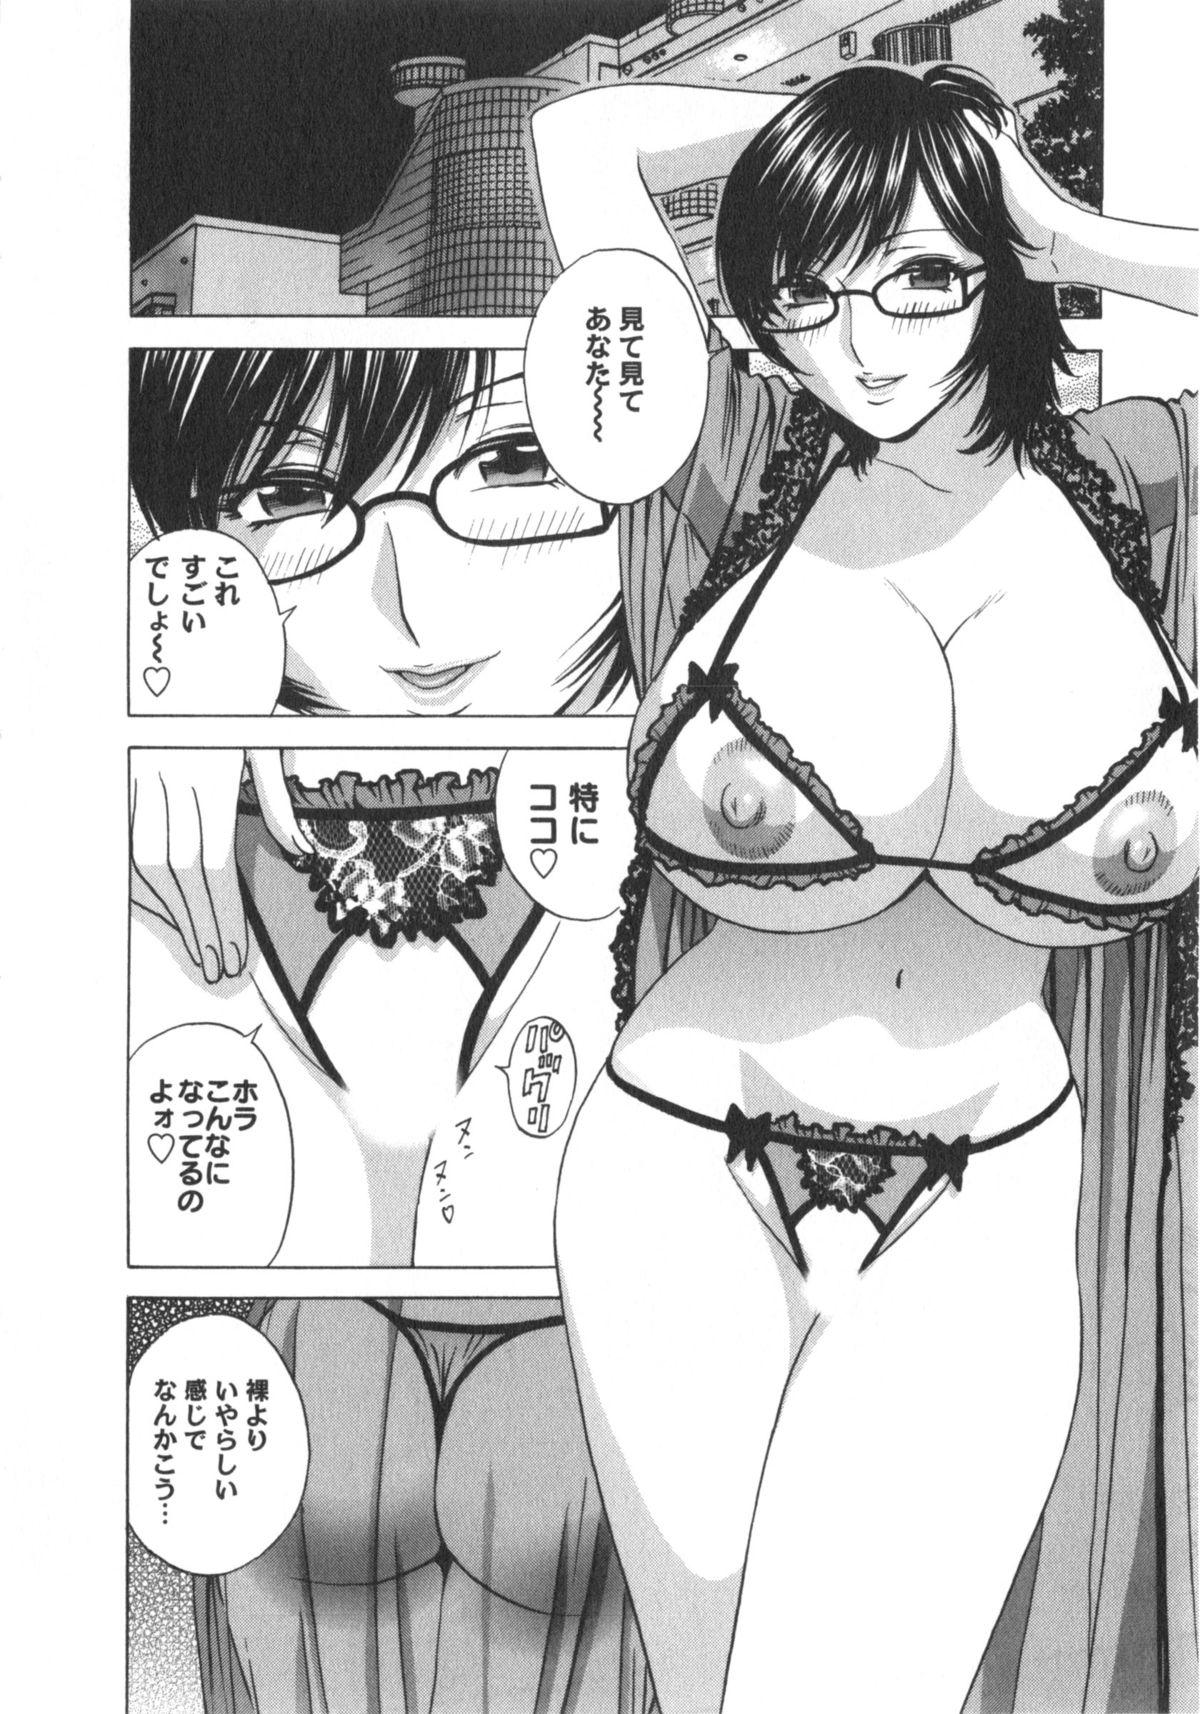 Manga no youna Hitozuma to no Hibi - Days with Married Women such as Comics. 154